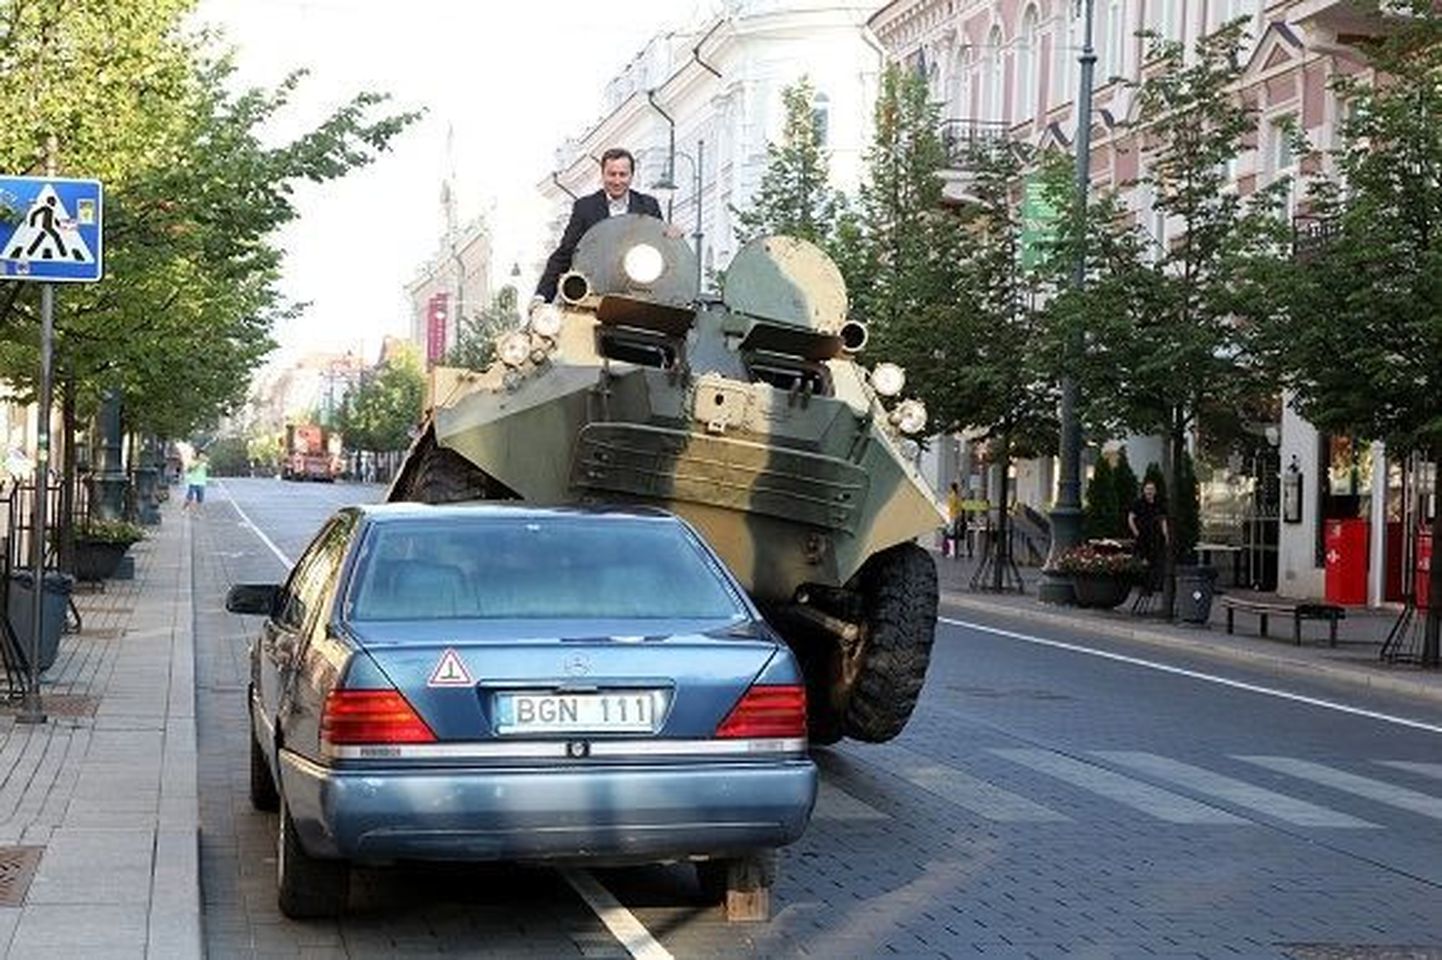 Vilniuse linnapea Arturas Zuokas soomukiga autost üle sõitmas.